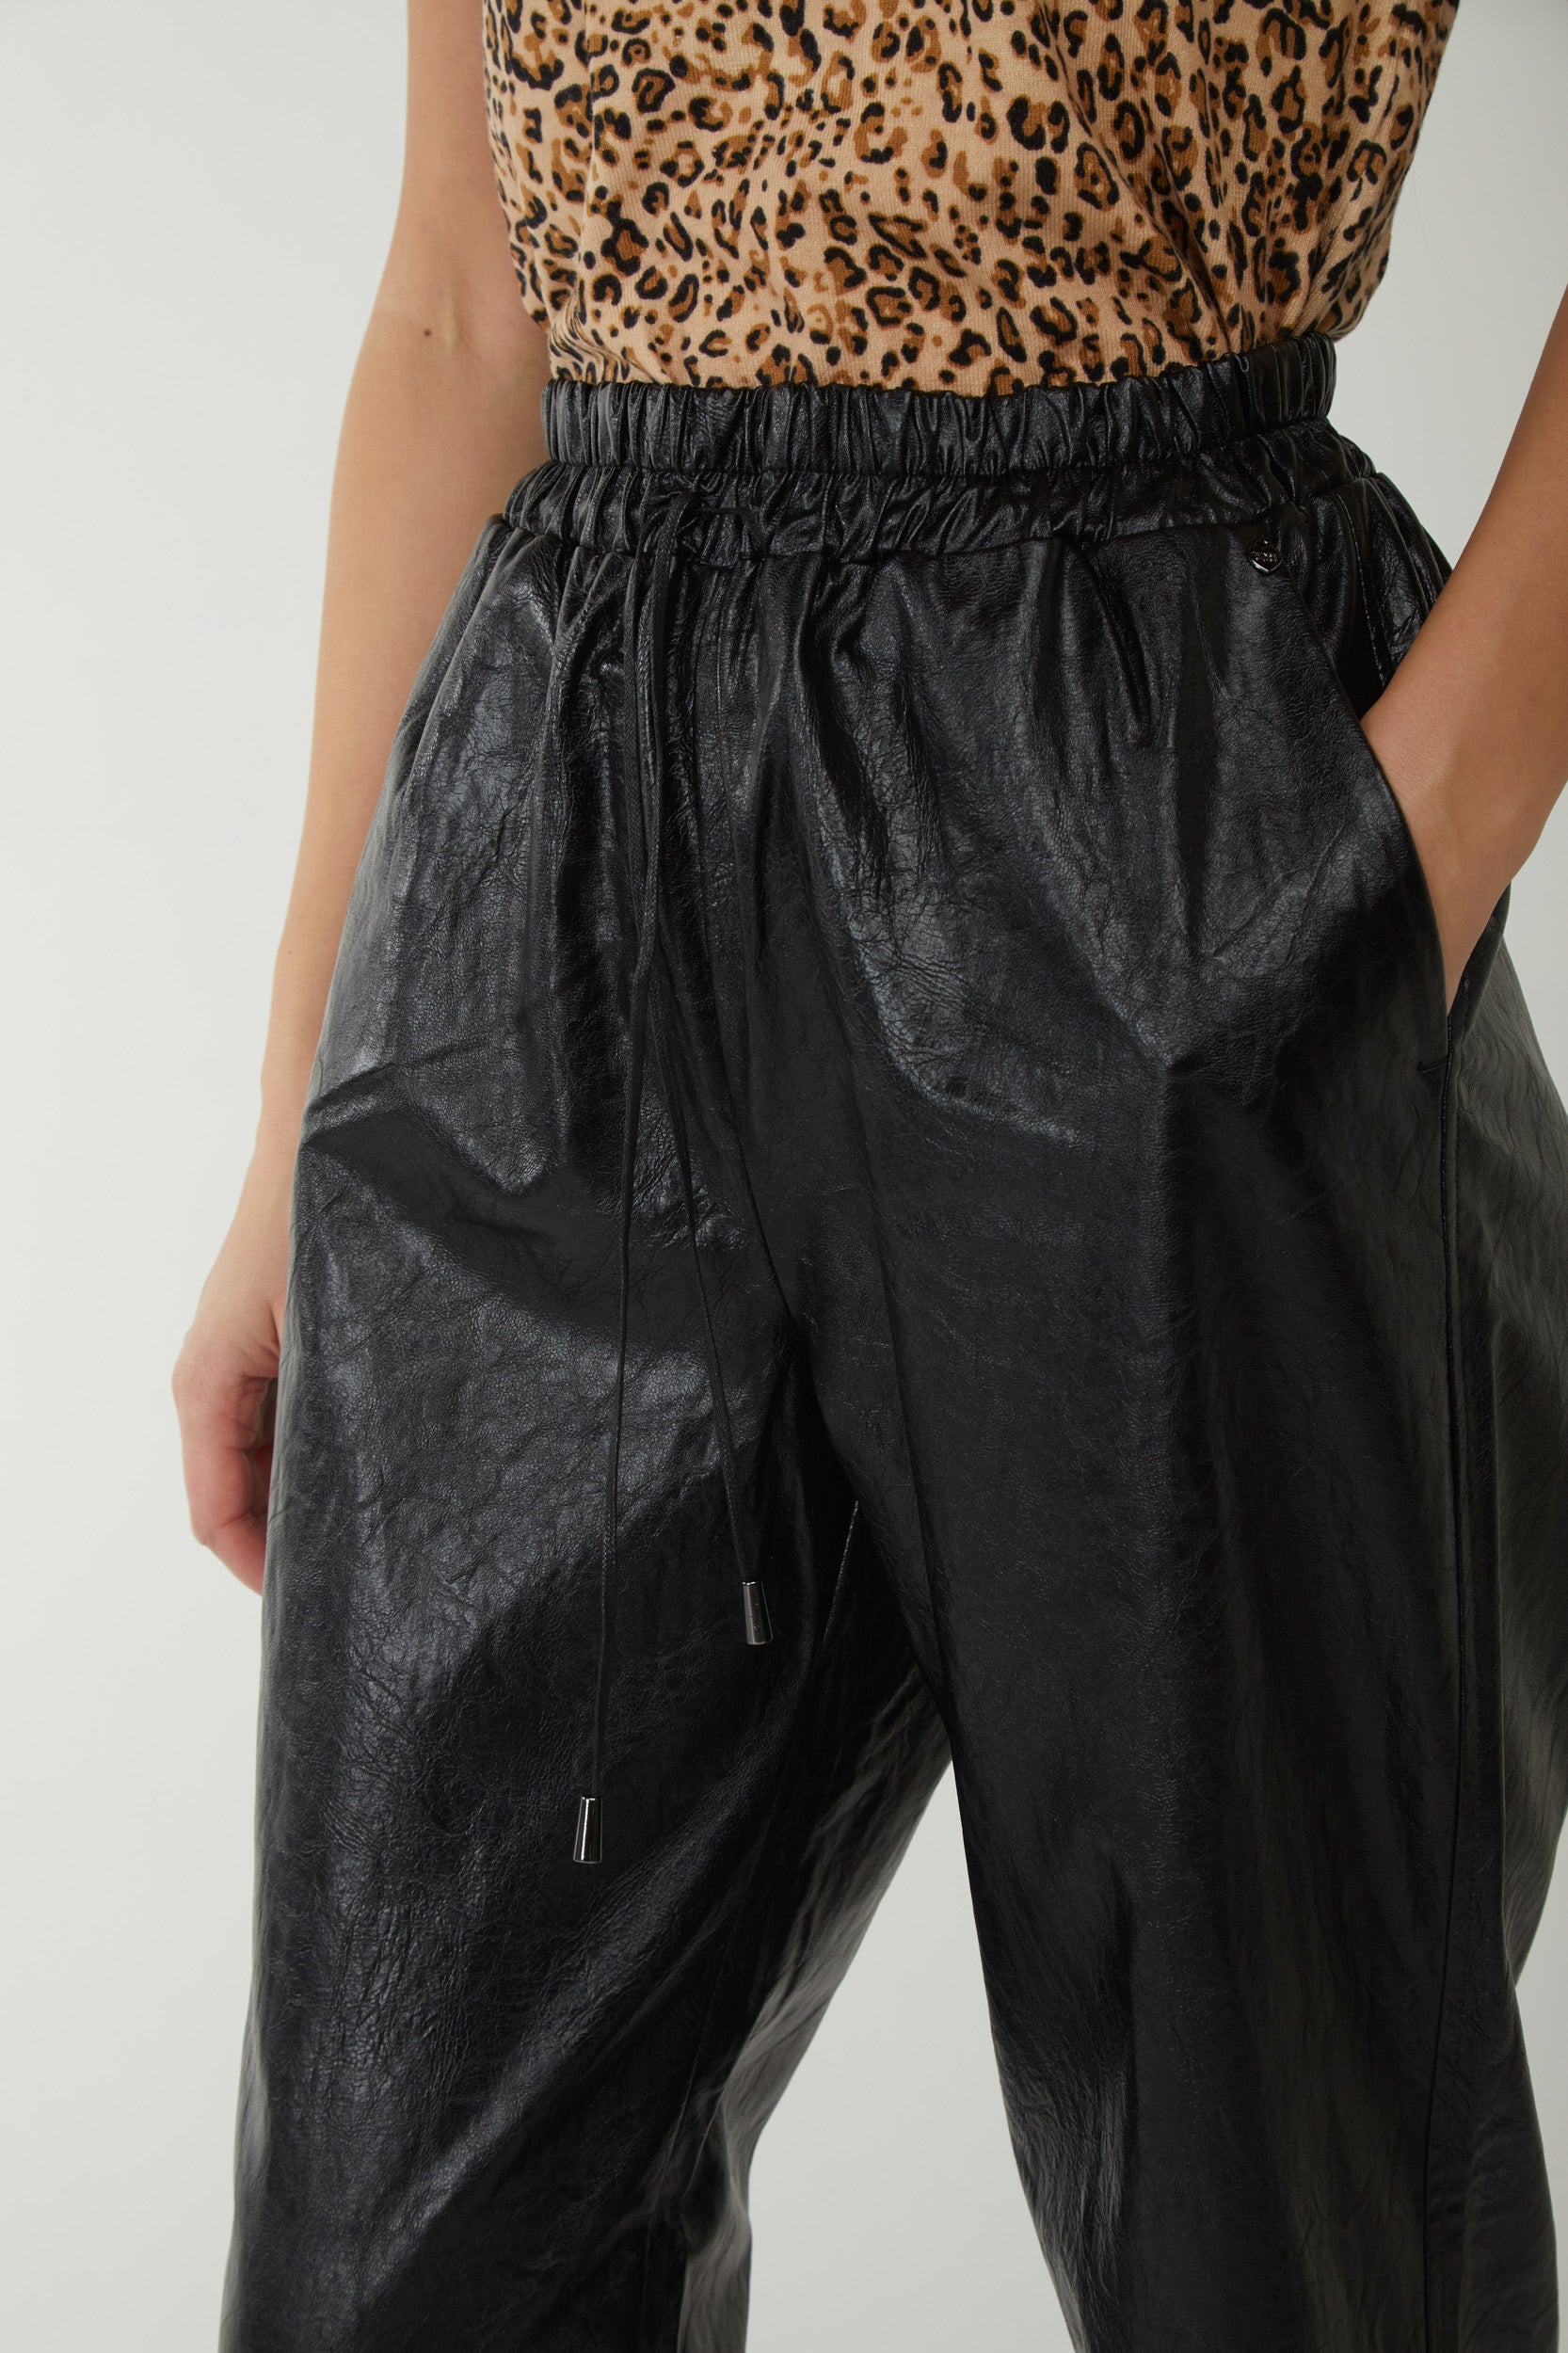 TWINSET Hose aus schwarzem Kunstleder